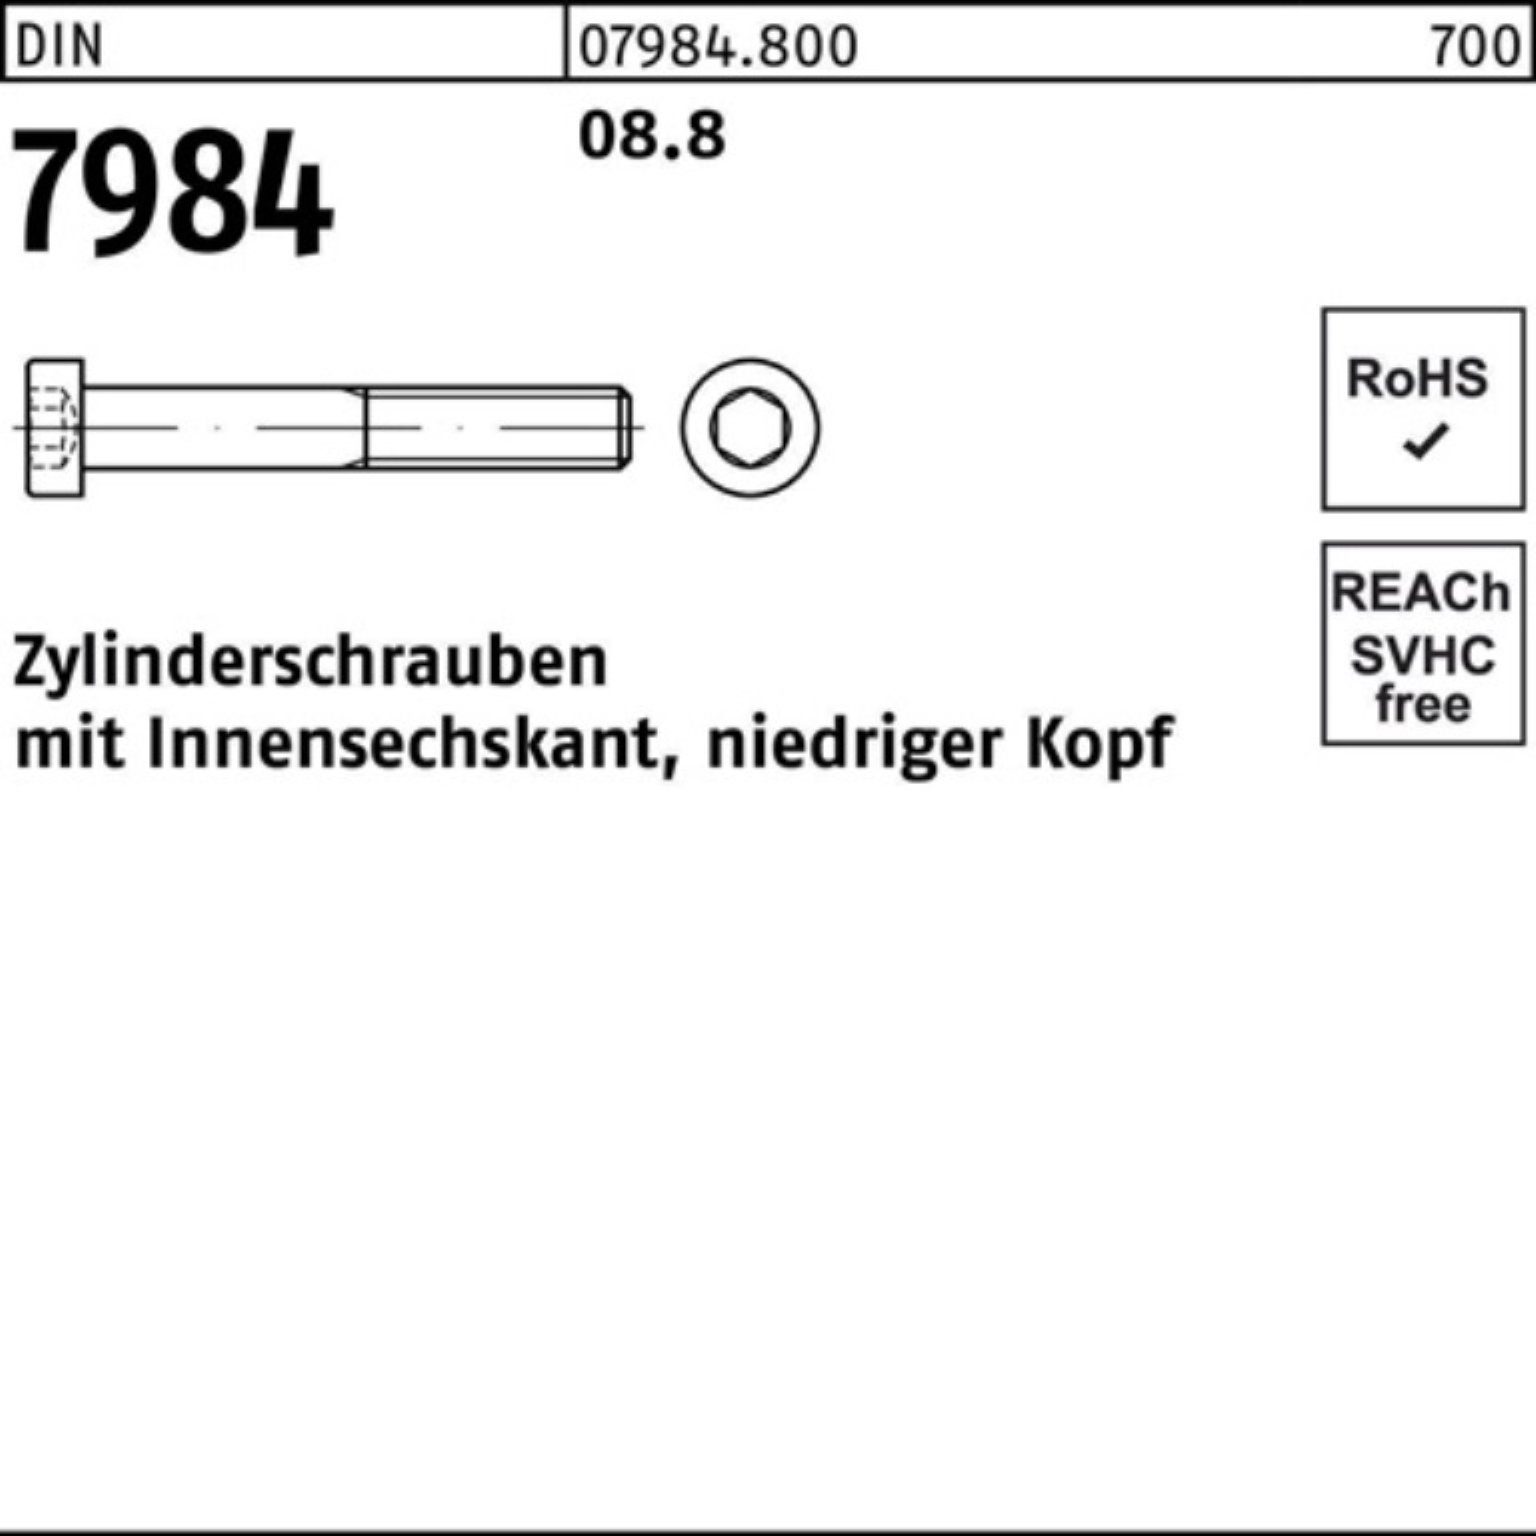 M4x 8 Zylinderschraube Innen-6kt 500 DI Zylinderschraube Pack 7984 DIN 500er Reyher Stück 8.8